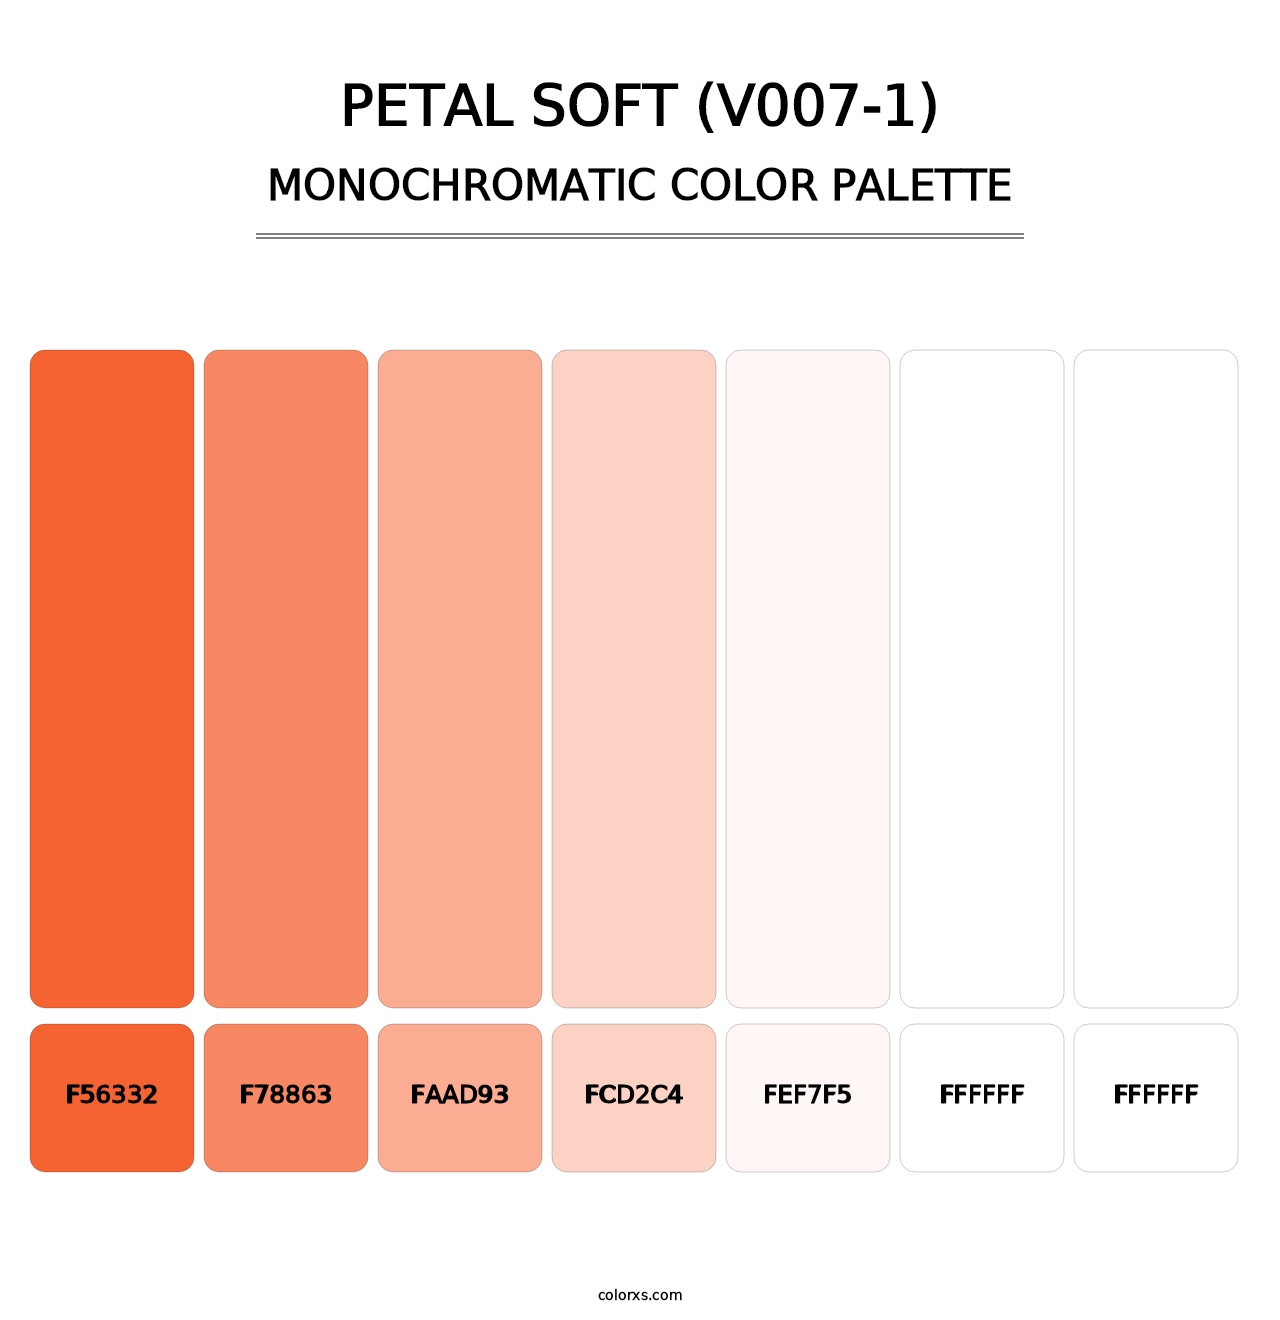 Petal Soft (V007-1) - Monochromatic Color Palette